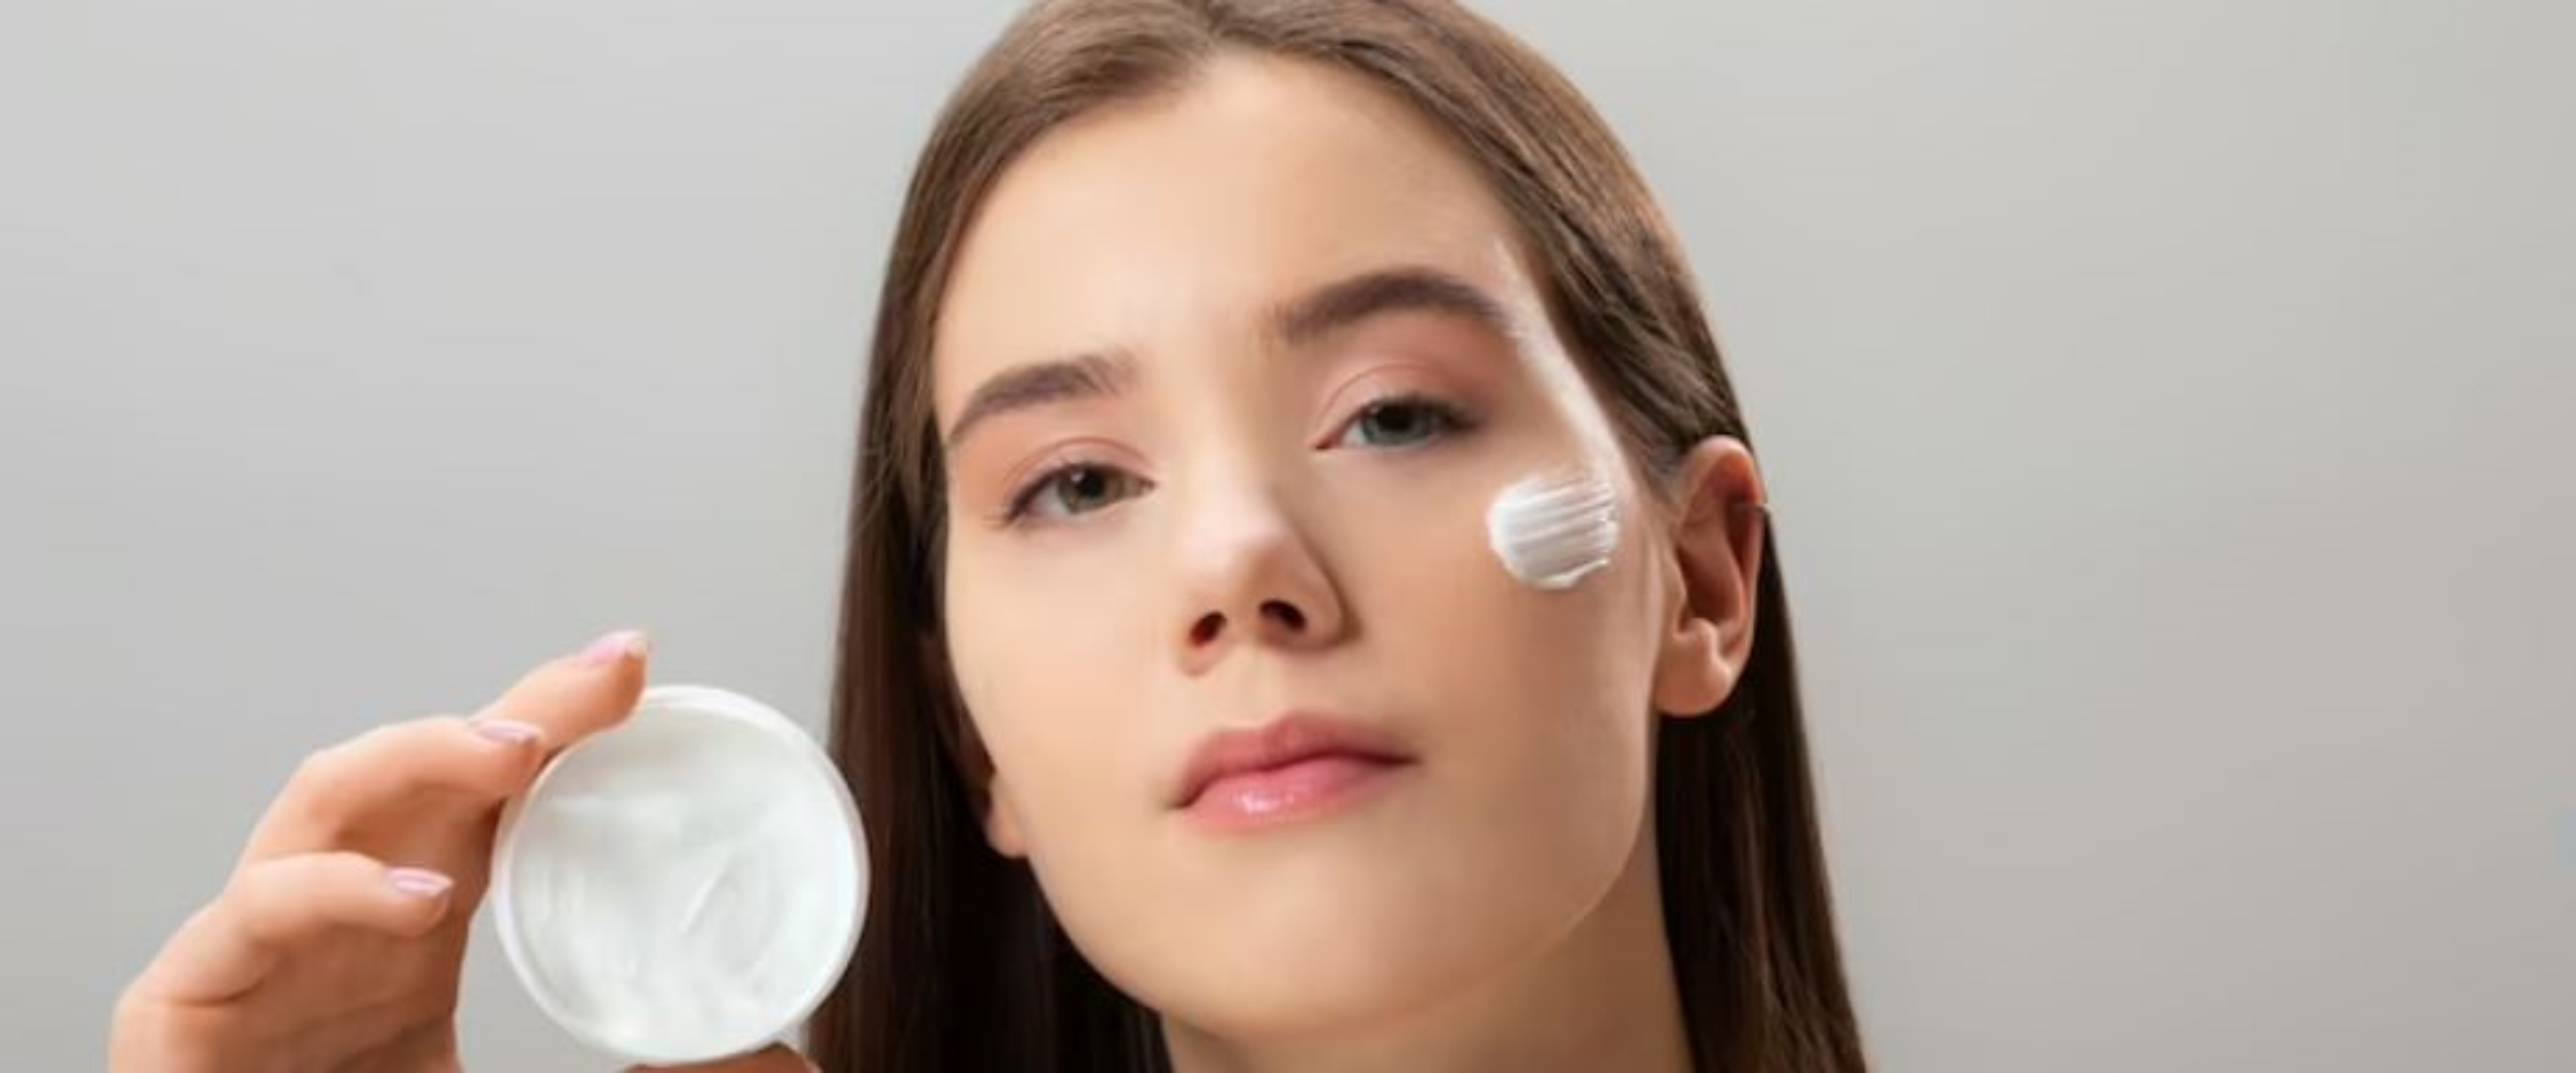 Trik mengatasi skin barrier rusak pakai sleep mask dari 3 bahan alami, bikin lembap dan kenyal